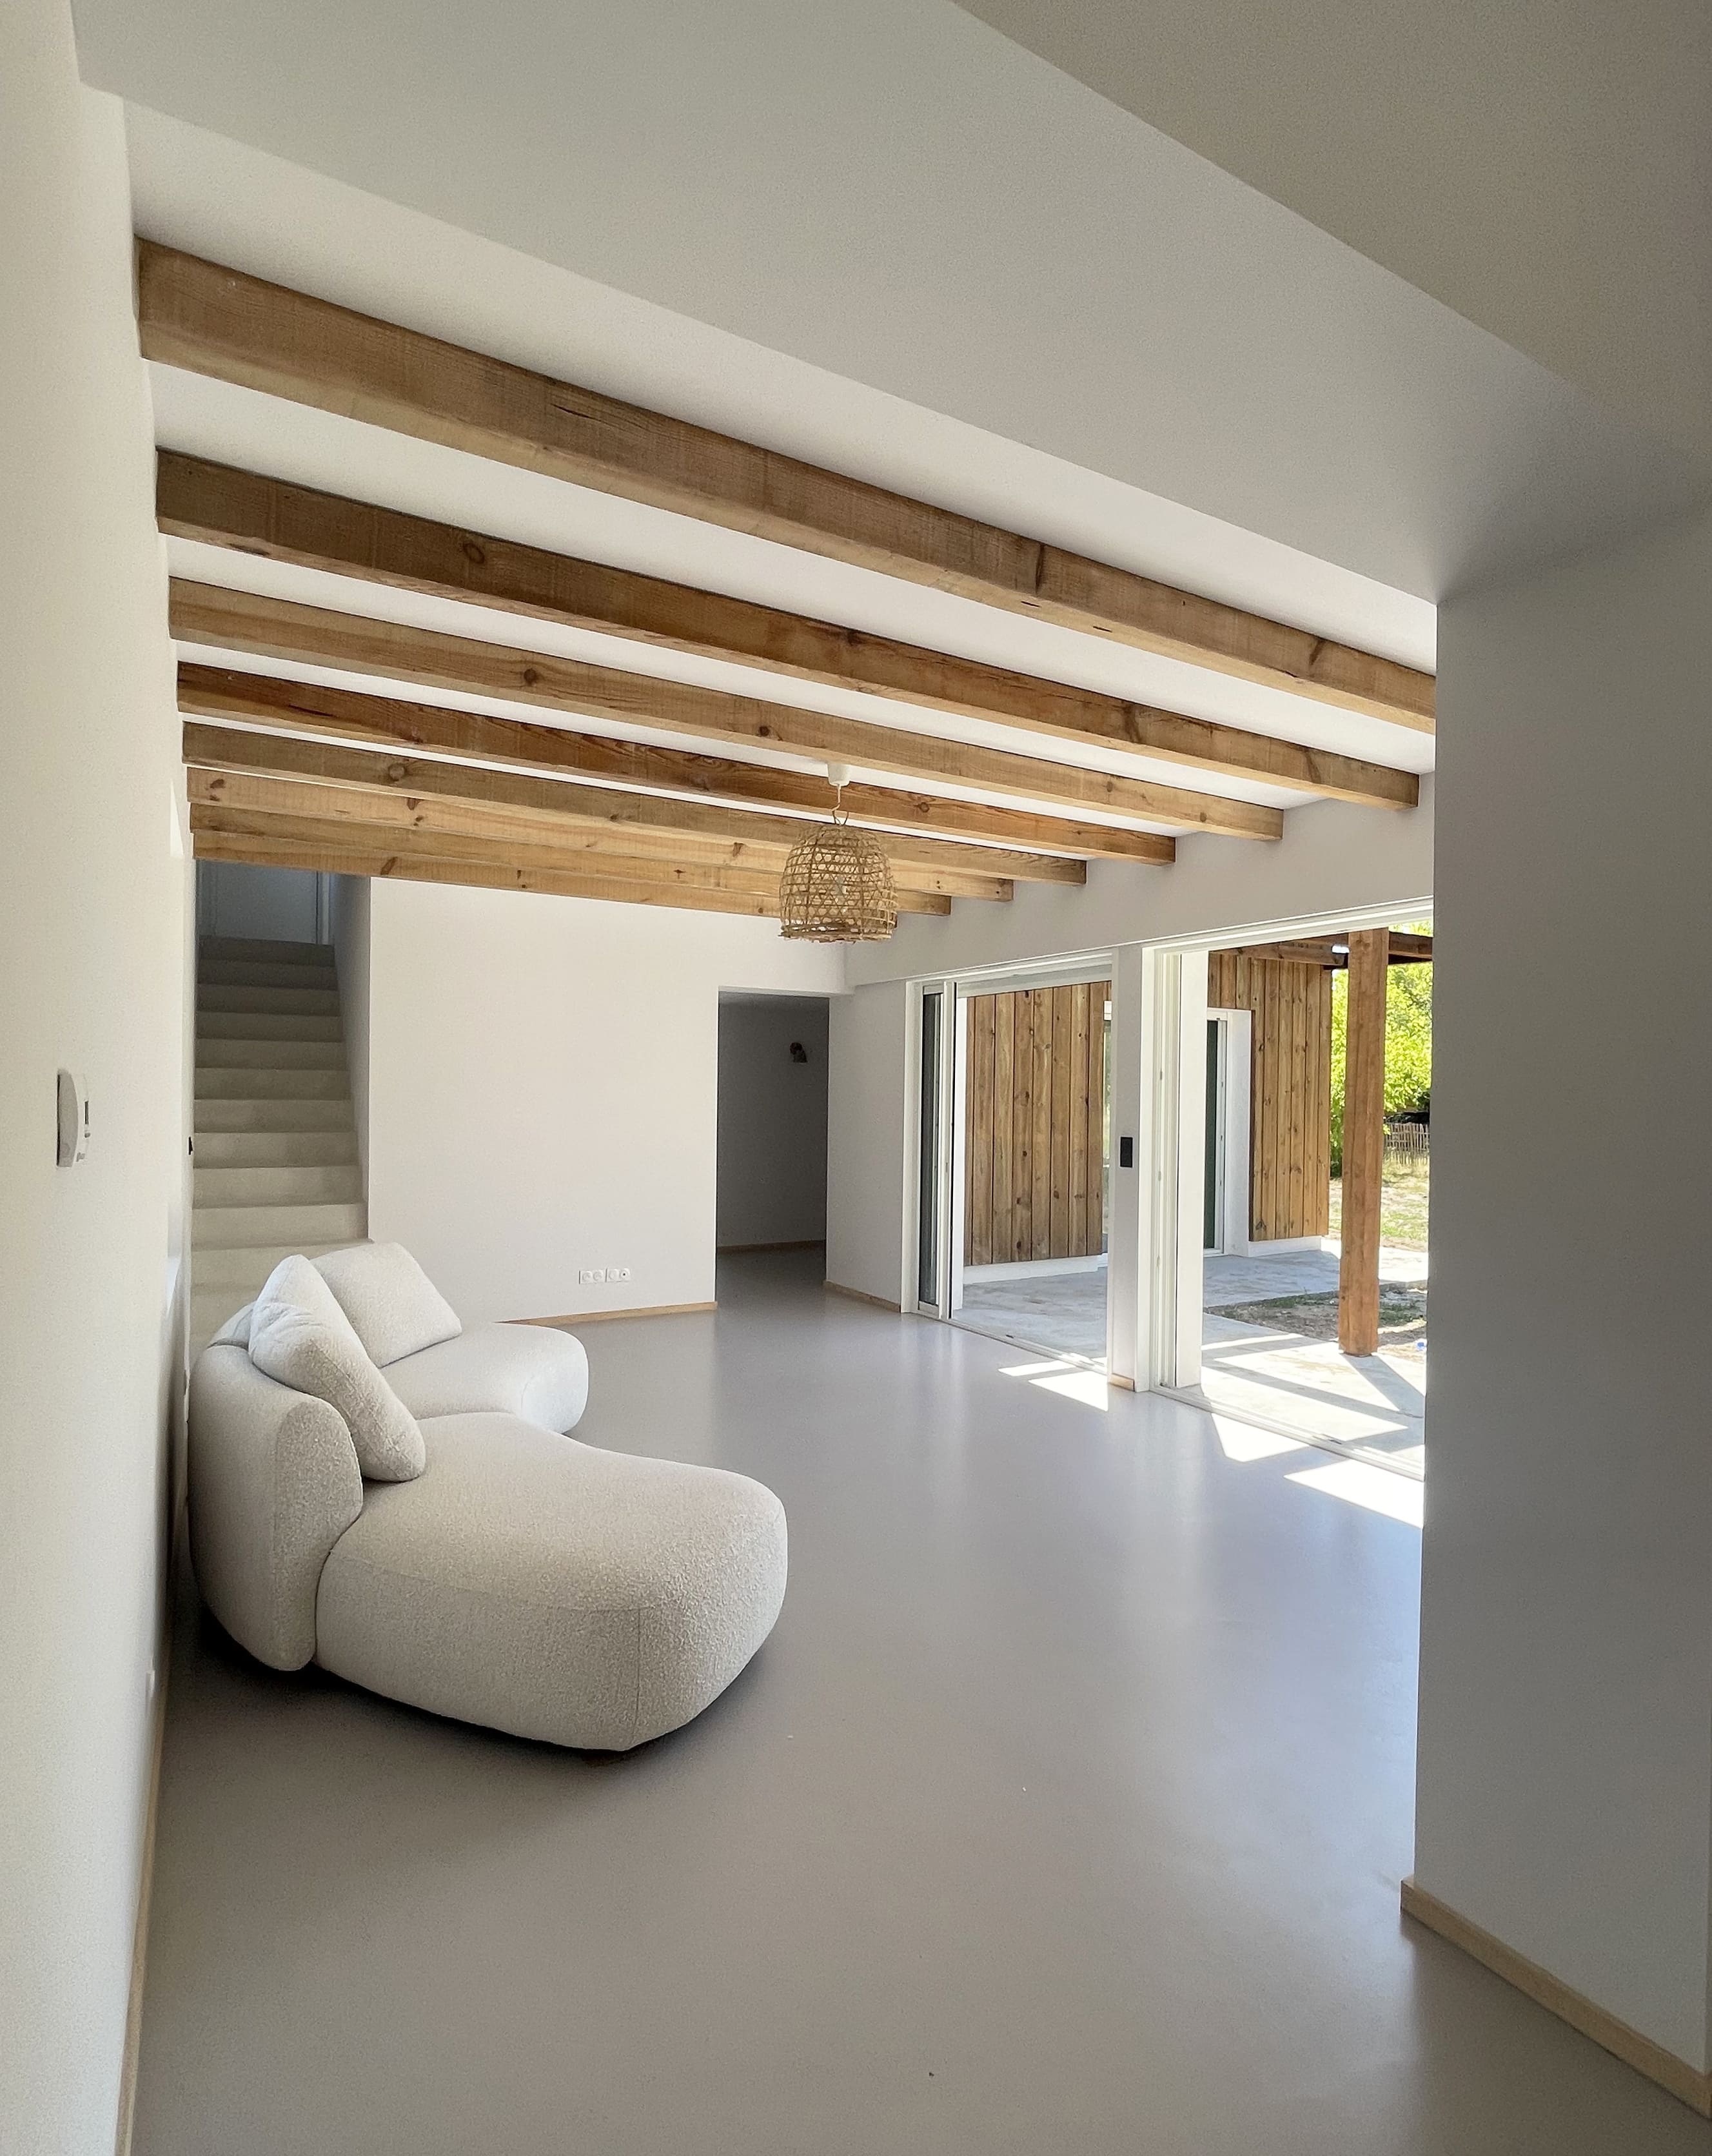  Lala Architectes_maison_landes_blanc_peinture de sol_solives bois_escalier beton enduit_galandage